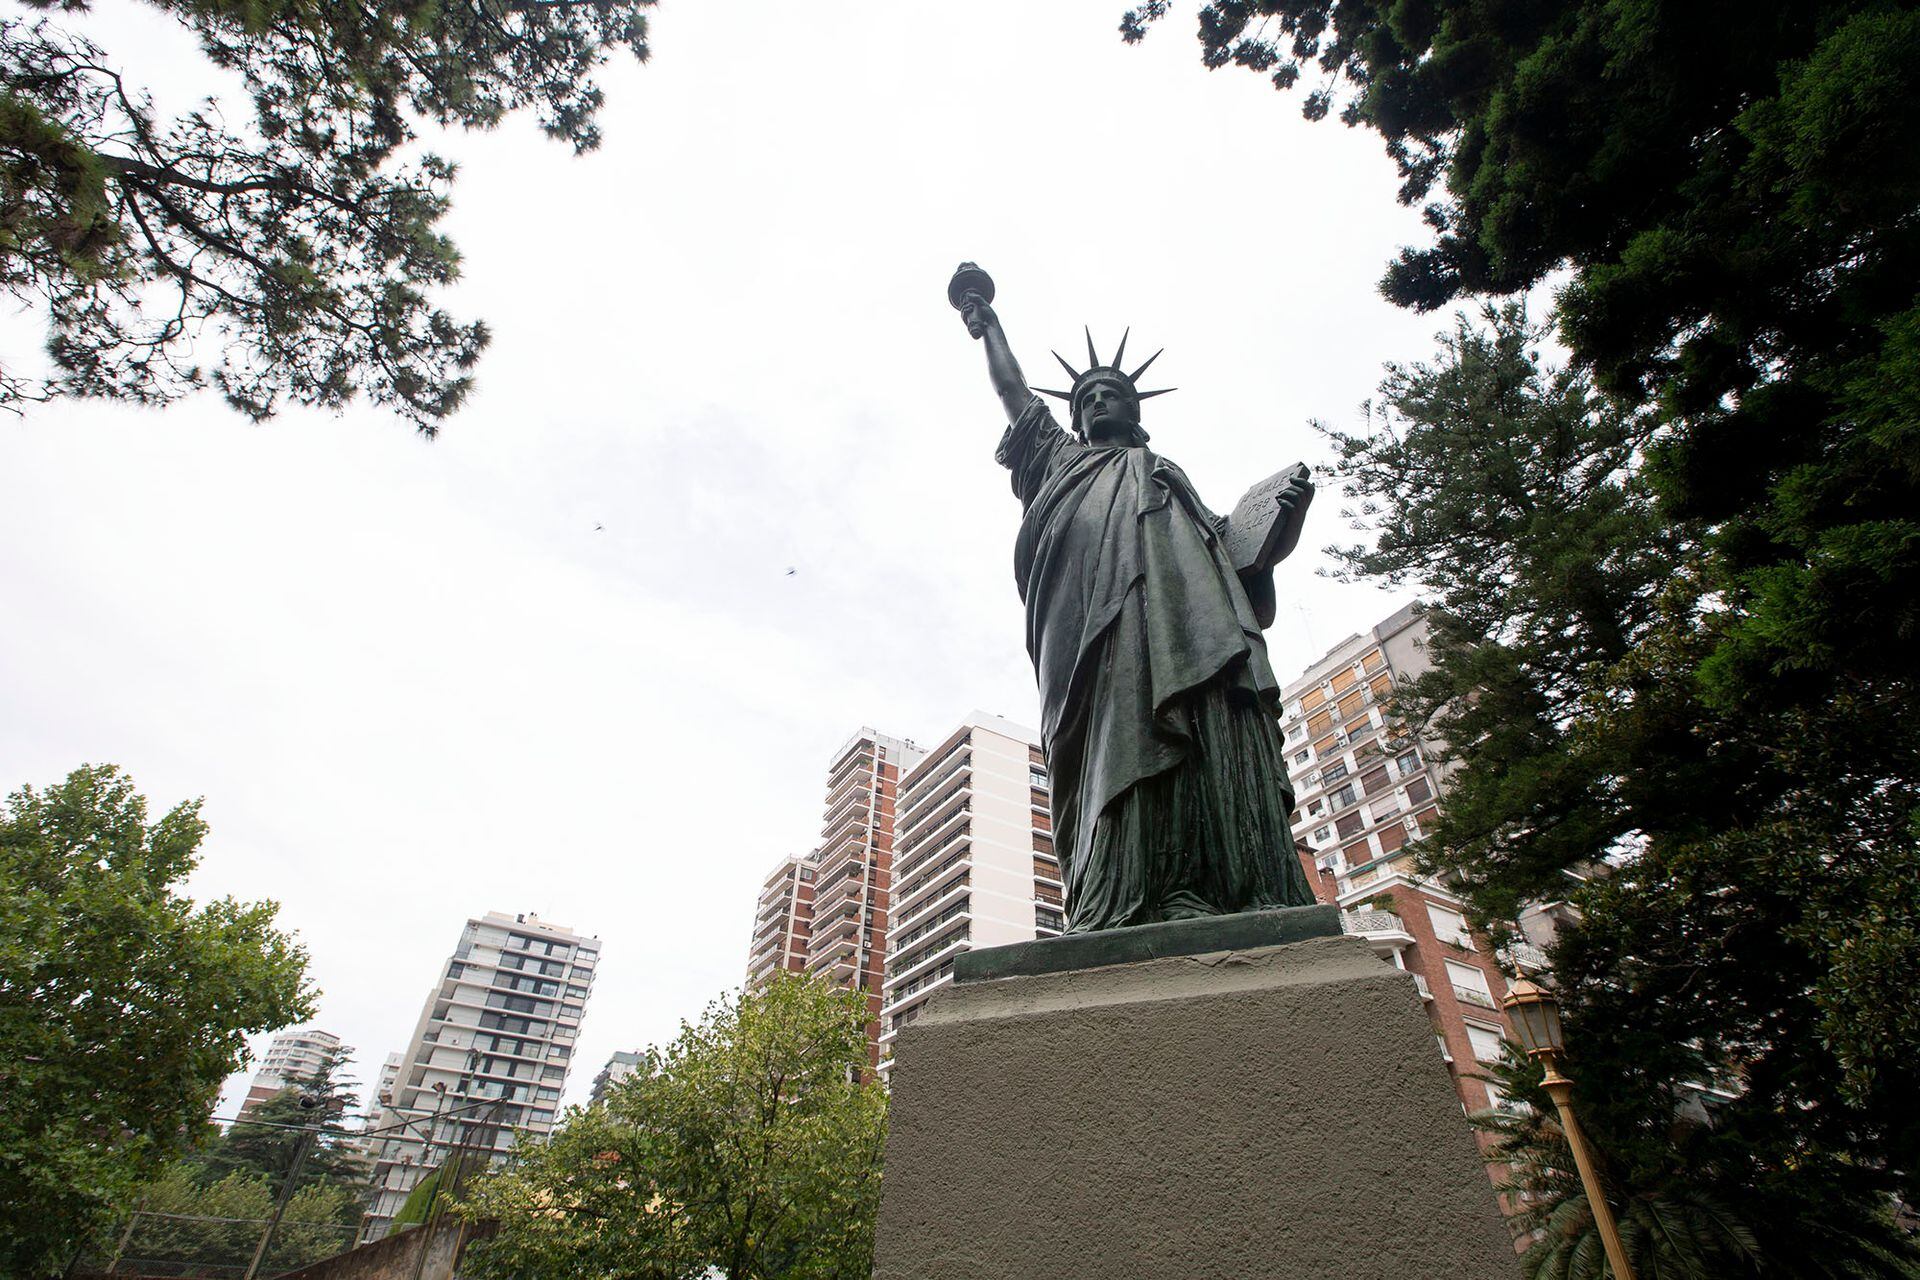 Réplica a escala de la estatua de la libertad en Barrancas de Belgrano